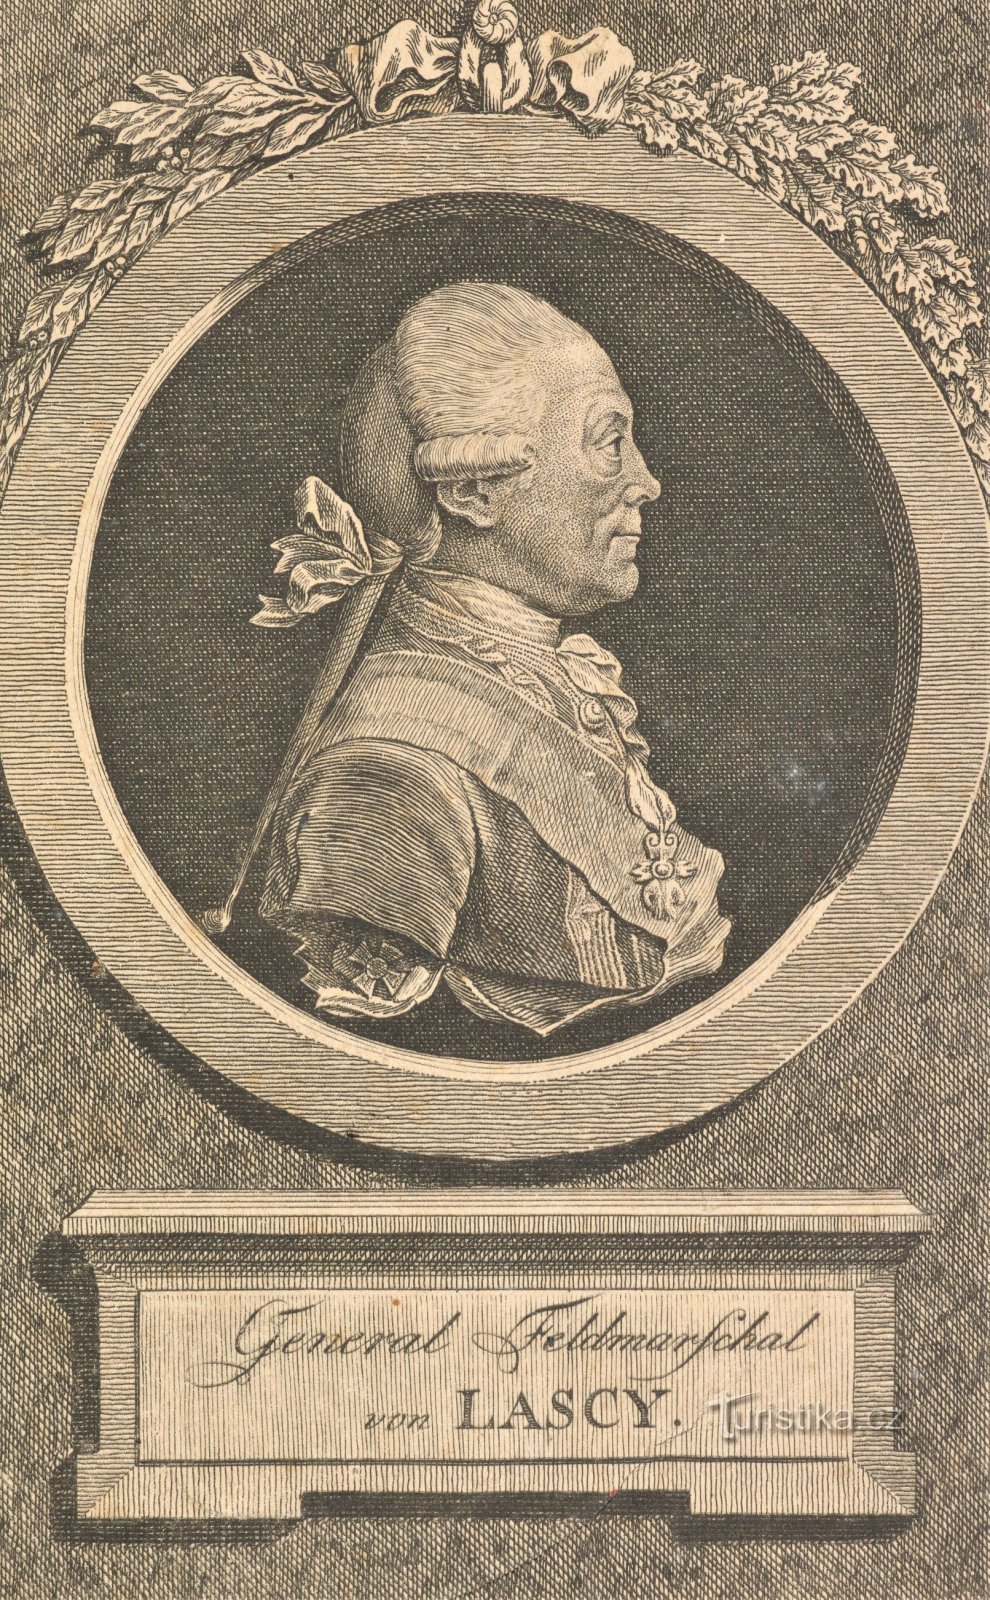 Portret z epoki generała Lacy